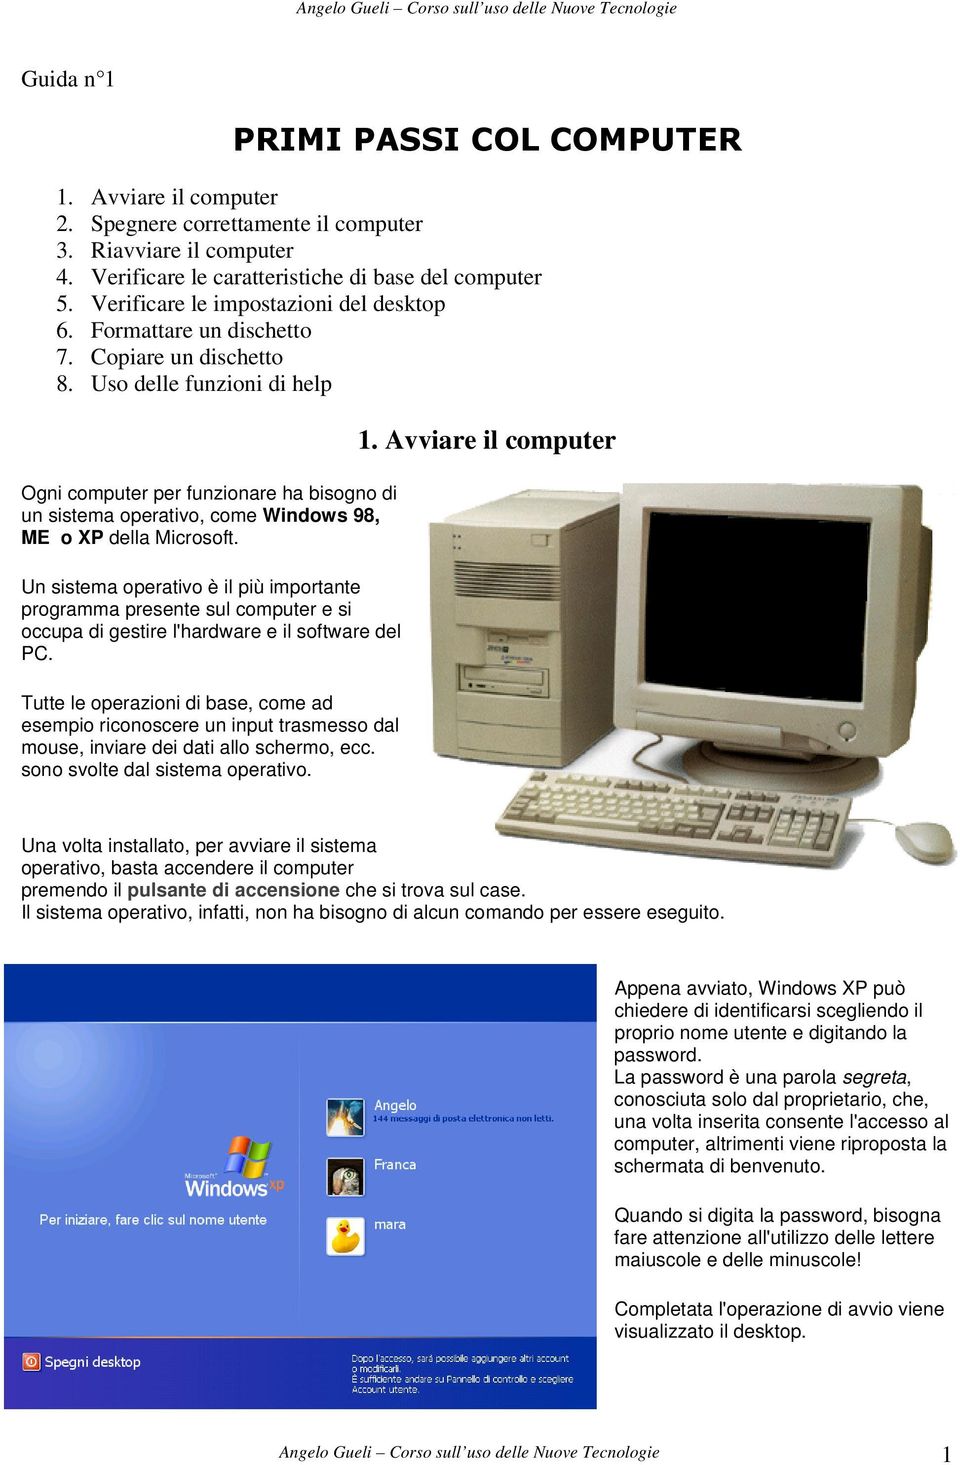 Un sistema operativo è il più importante programma presente sul computer e si occupa di gestire l'hardware e il software del PC.